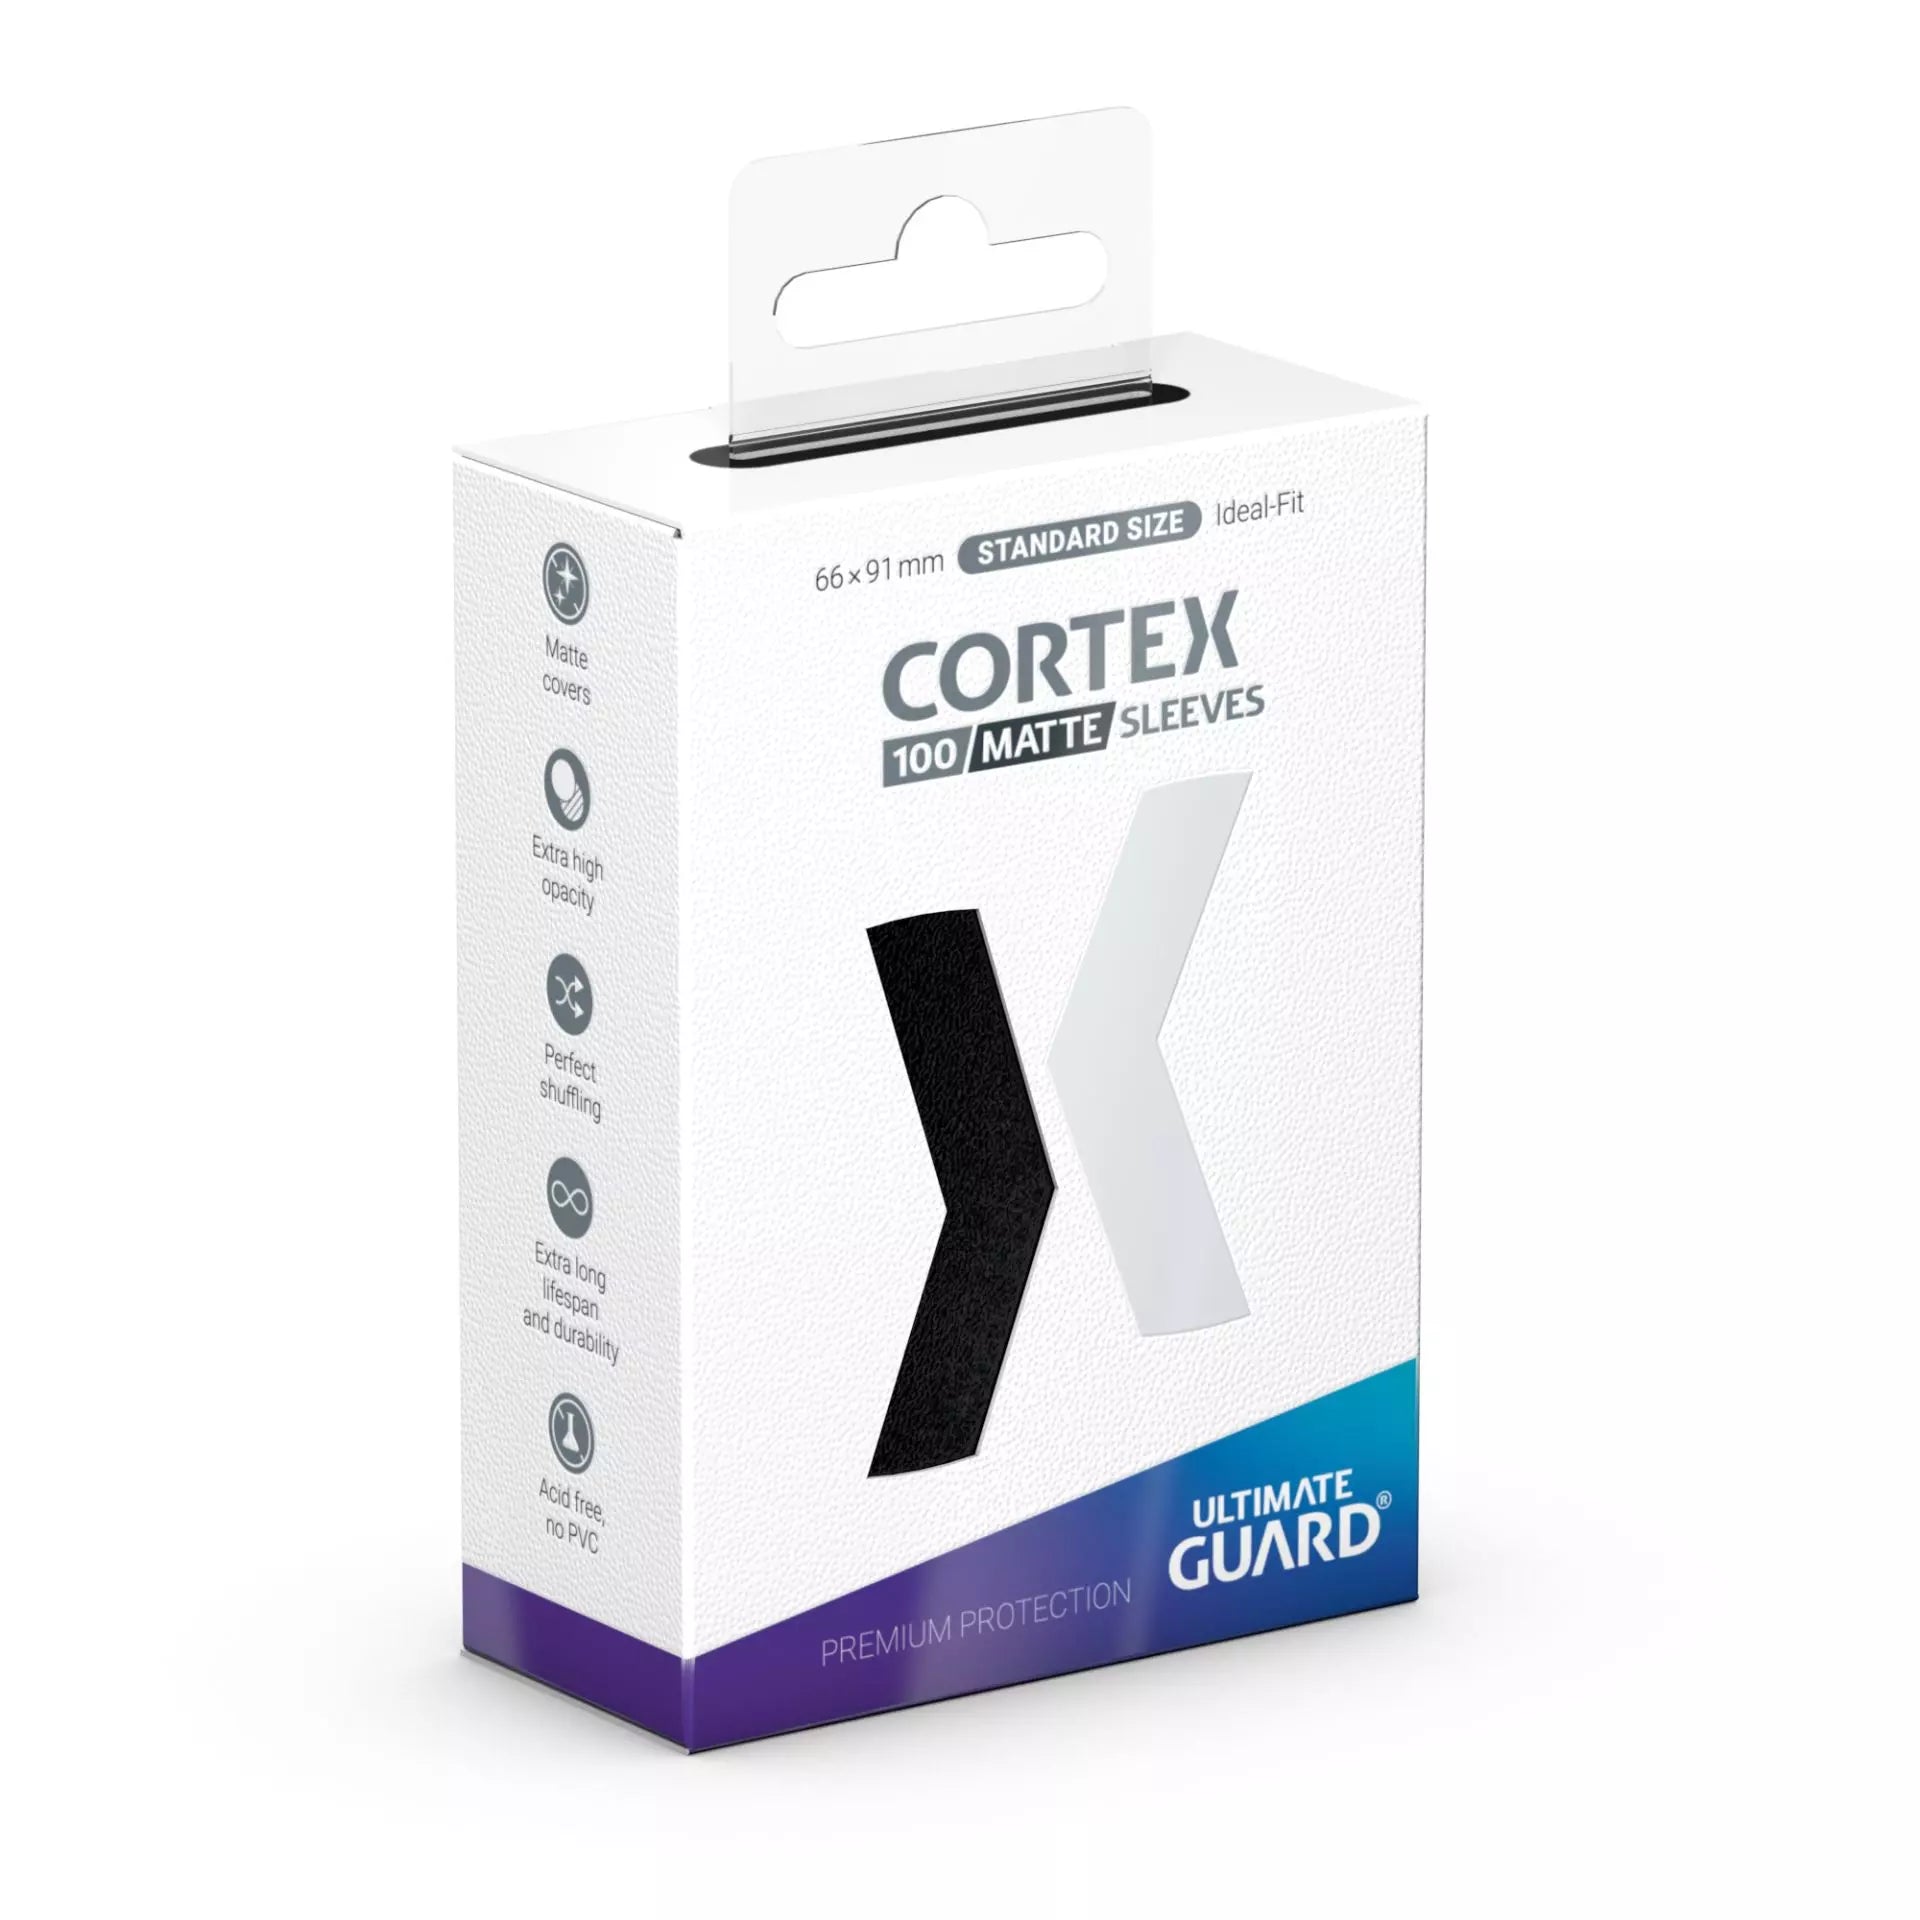 Cortex Sleeves Matte Standard Size 100ct